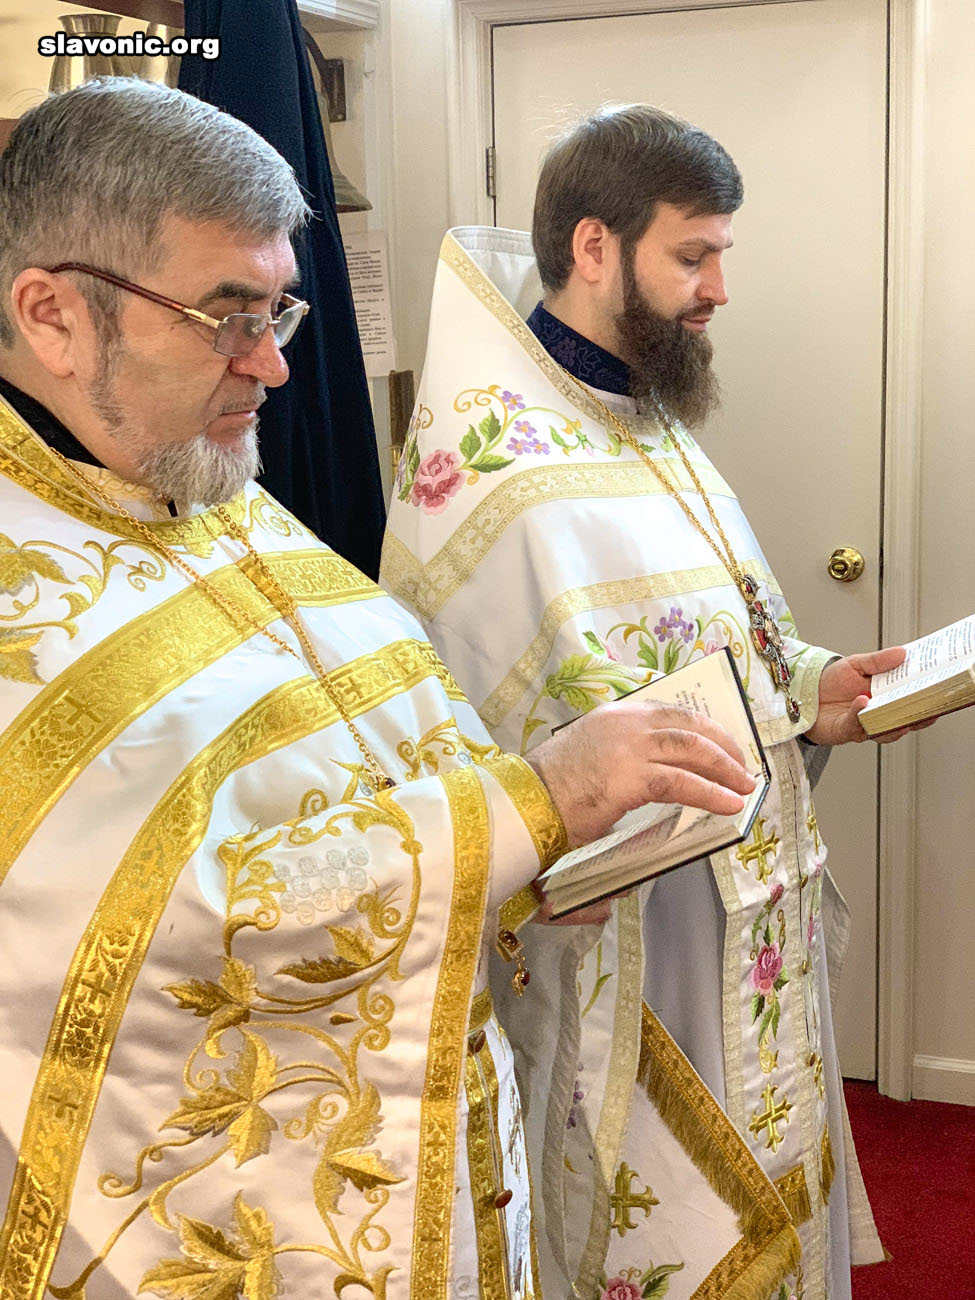 Во время визита в Бруклинский собор архиепископ Елпидофор удостоил клириков богослужебных наград и подарил икону для прихода